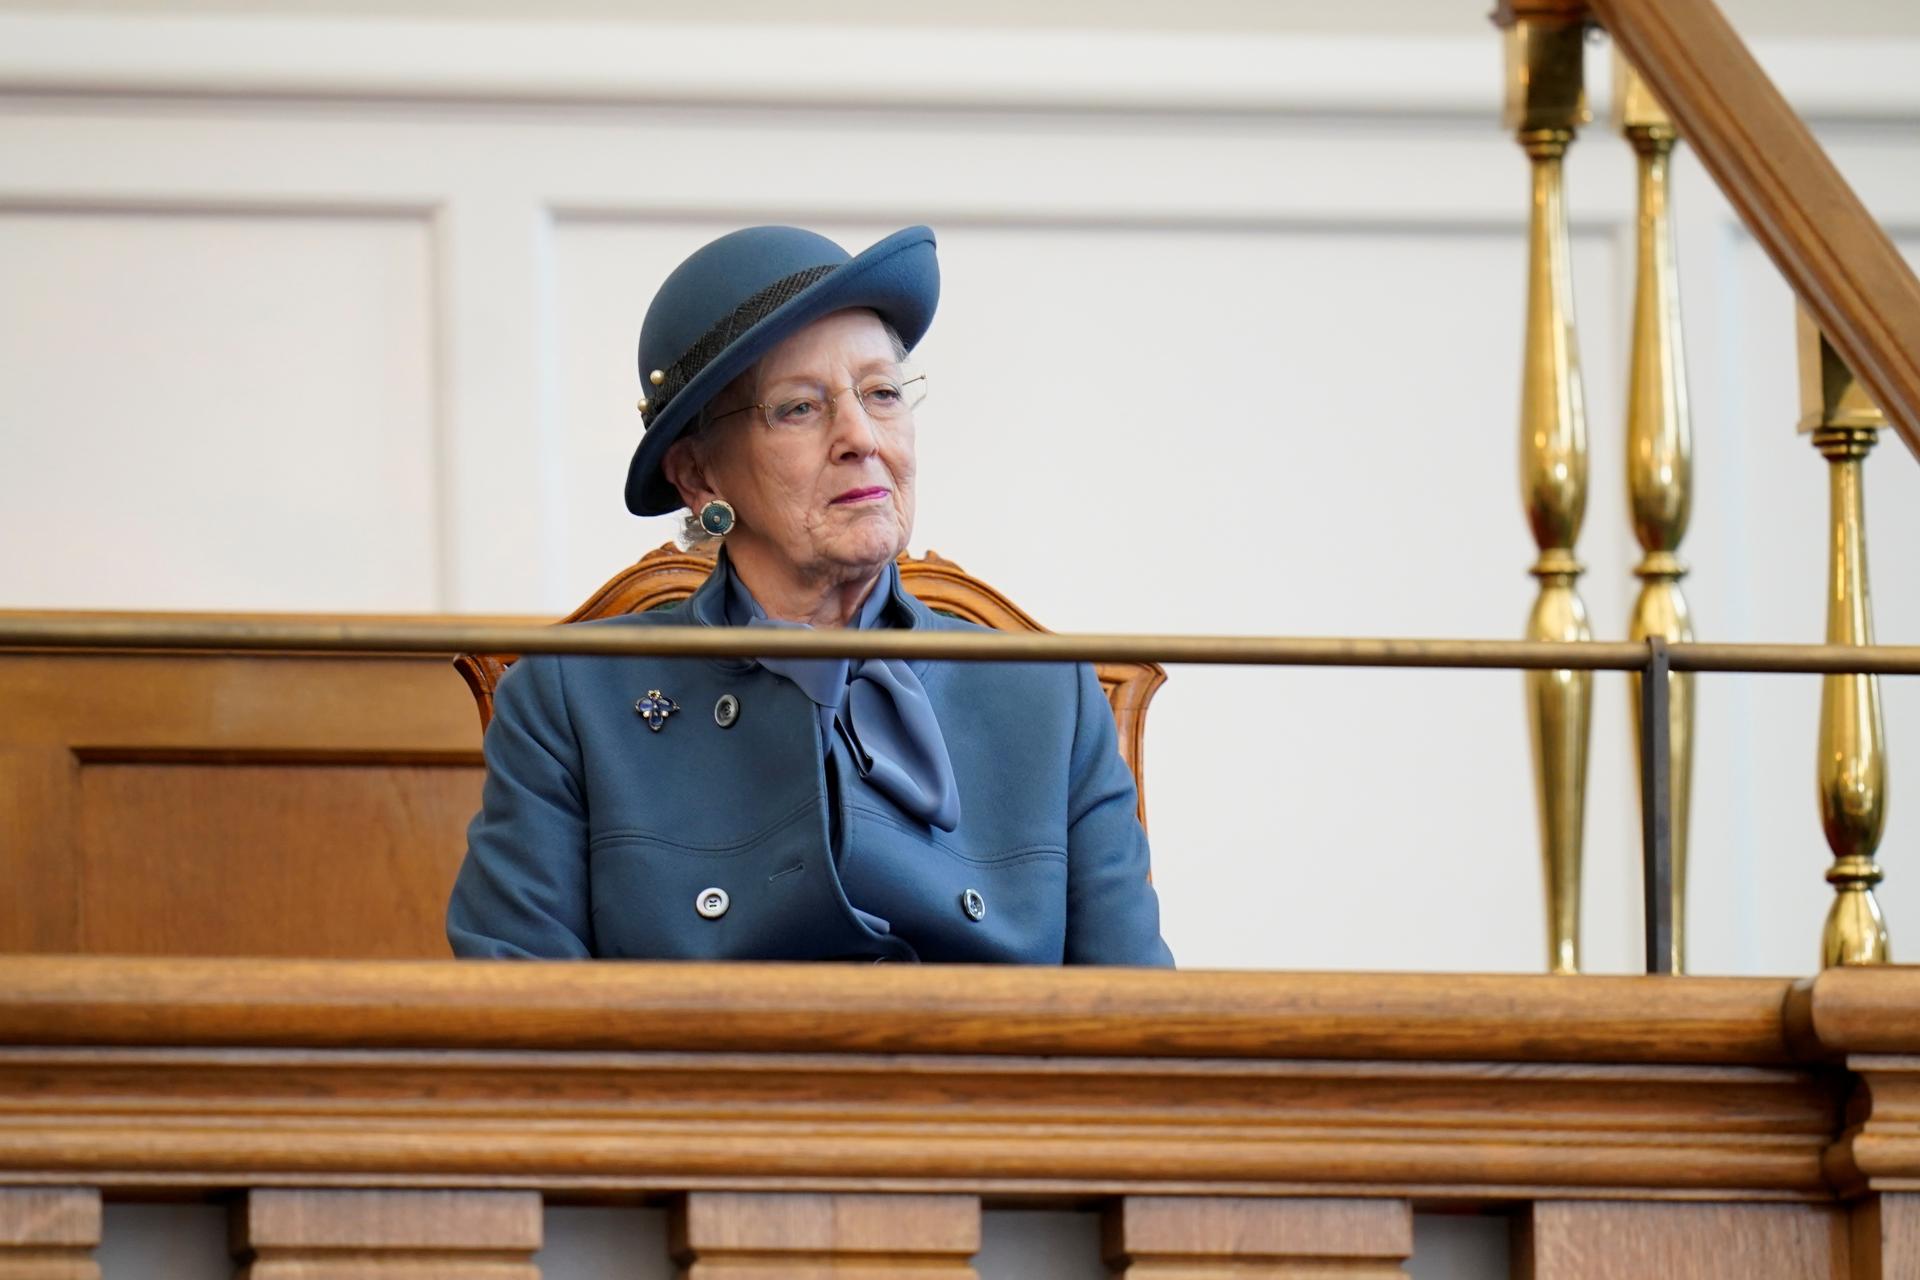 Dánska kráľovná oznámila, že chce 14. januára odovzdať trón svojmu synovi